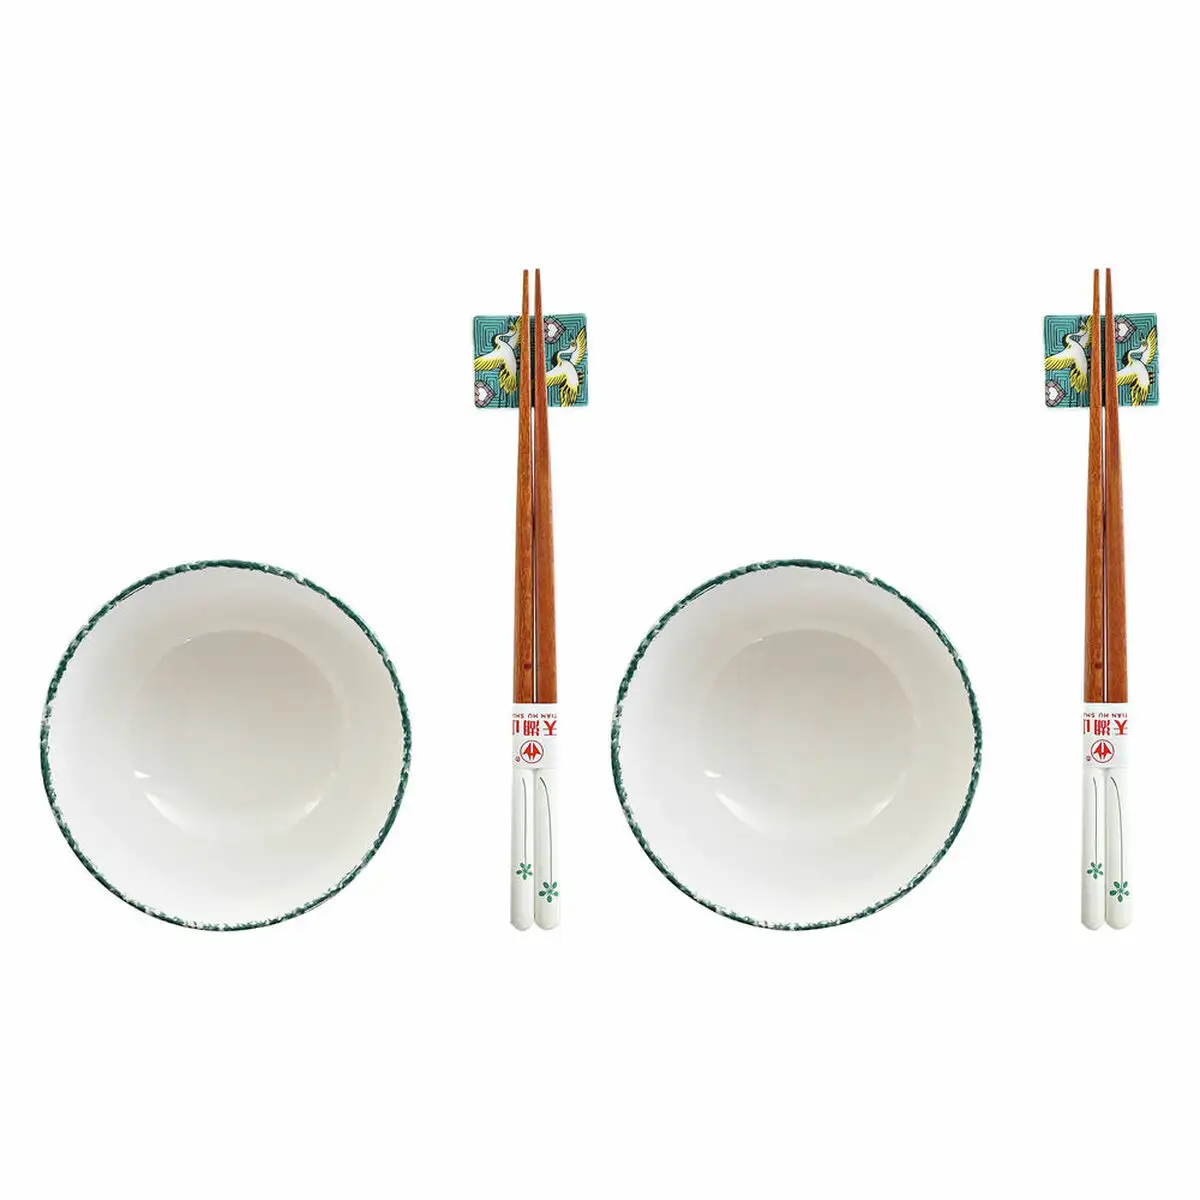 Set de sushi dkd home decor 25 x 25 x 6 5 cm porcelaine bois blanc vert oriental 6 pieces 25 x 25 x 6 5 cm 6 pcs _9613. DIAYTAR SENEGAL - L'Art du Shopping Facilité. Naviguez sur notre plateforme en ligne pour découvrir une expérience d'achat fluide et agréable, avec une gamme de produits adaptés à tous.